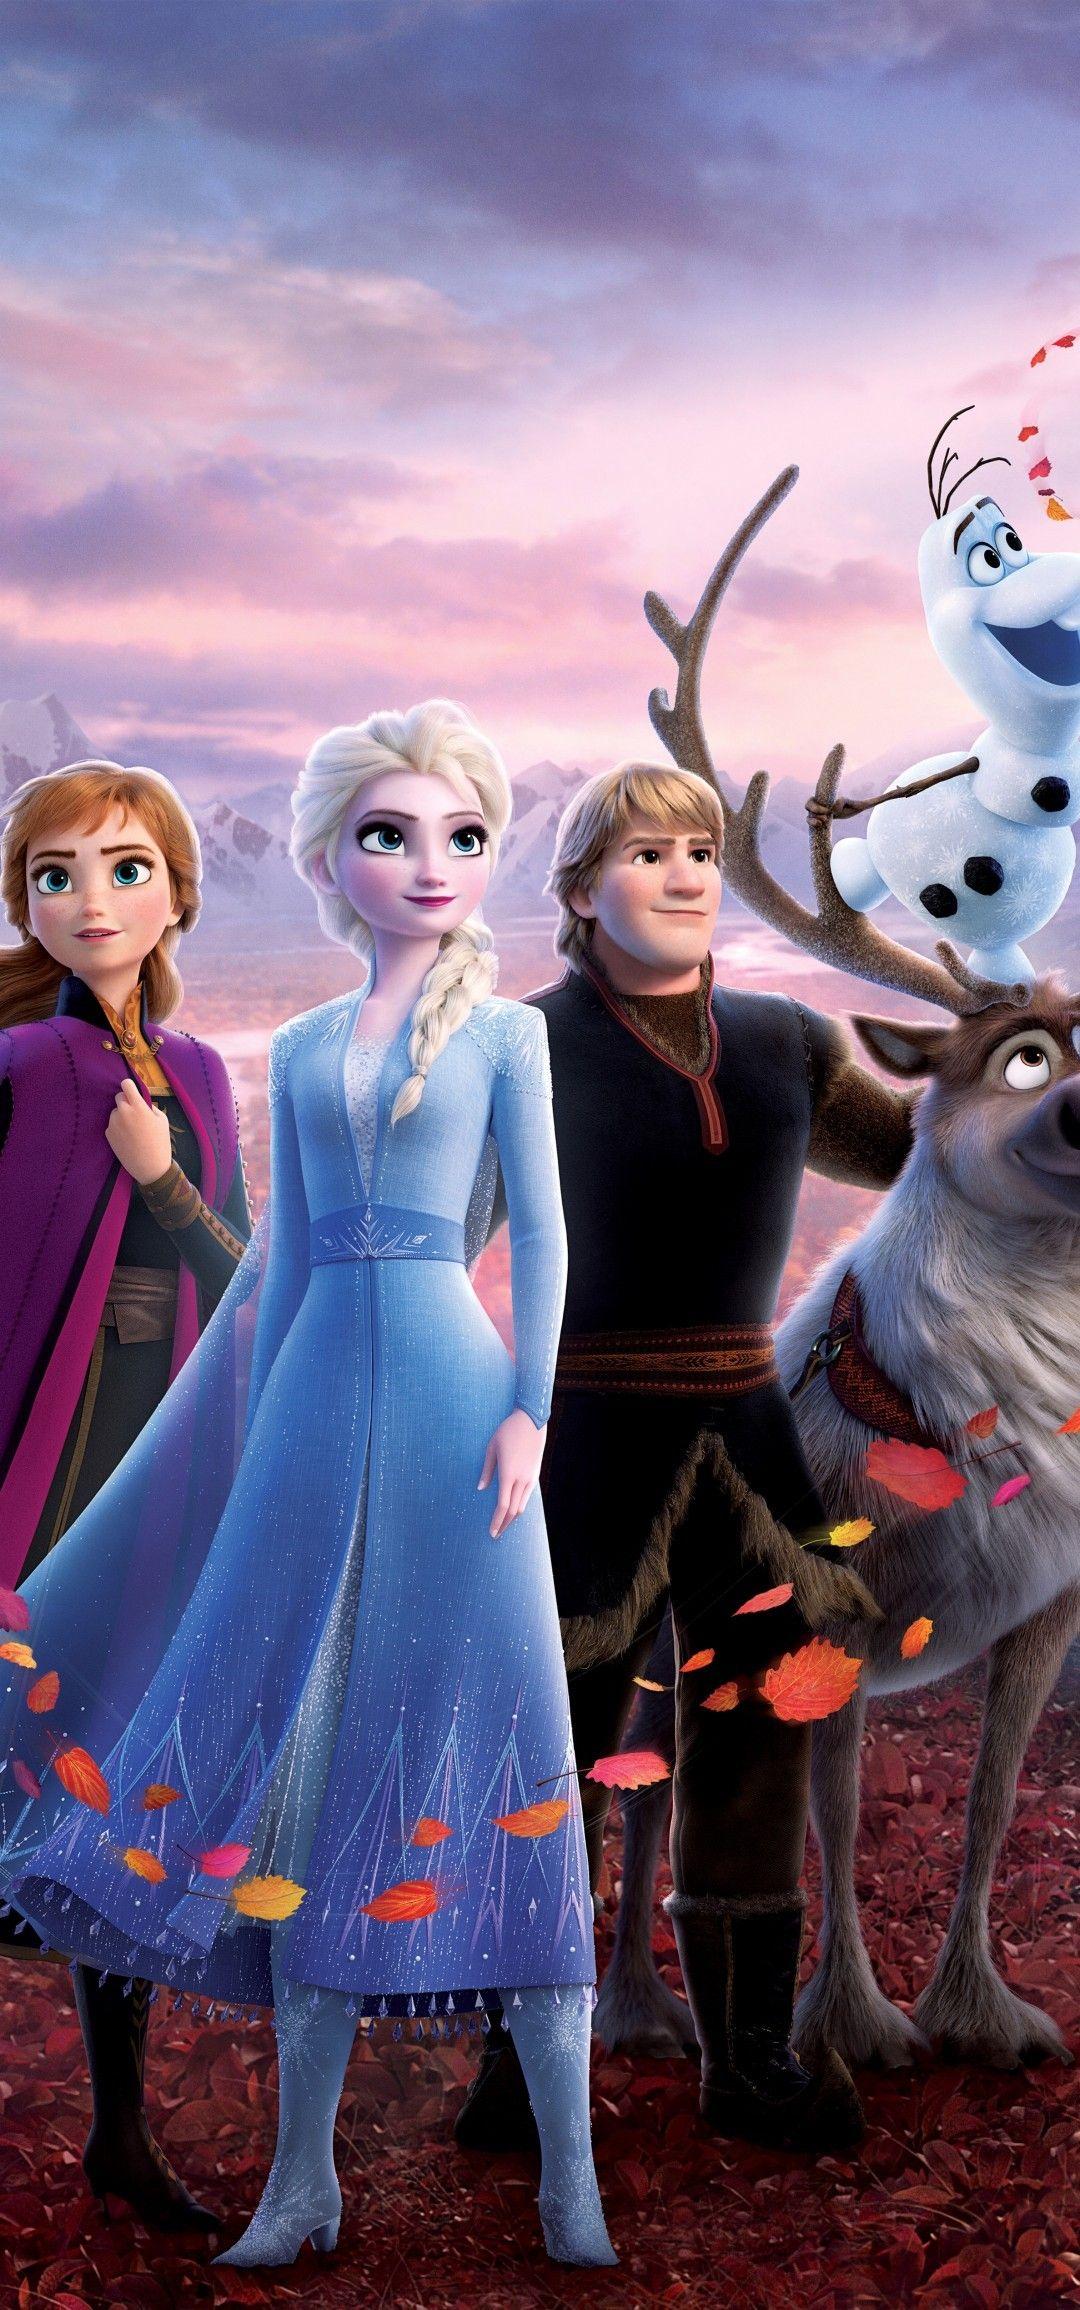 1080x2310 Tải xuống 1080x2310 Frozen 2, Hoạt hình, Nữ hoàng Elsa, Kristoff, Olaf